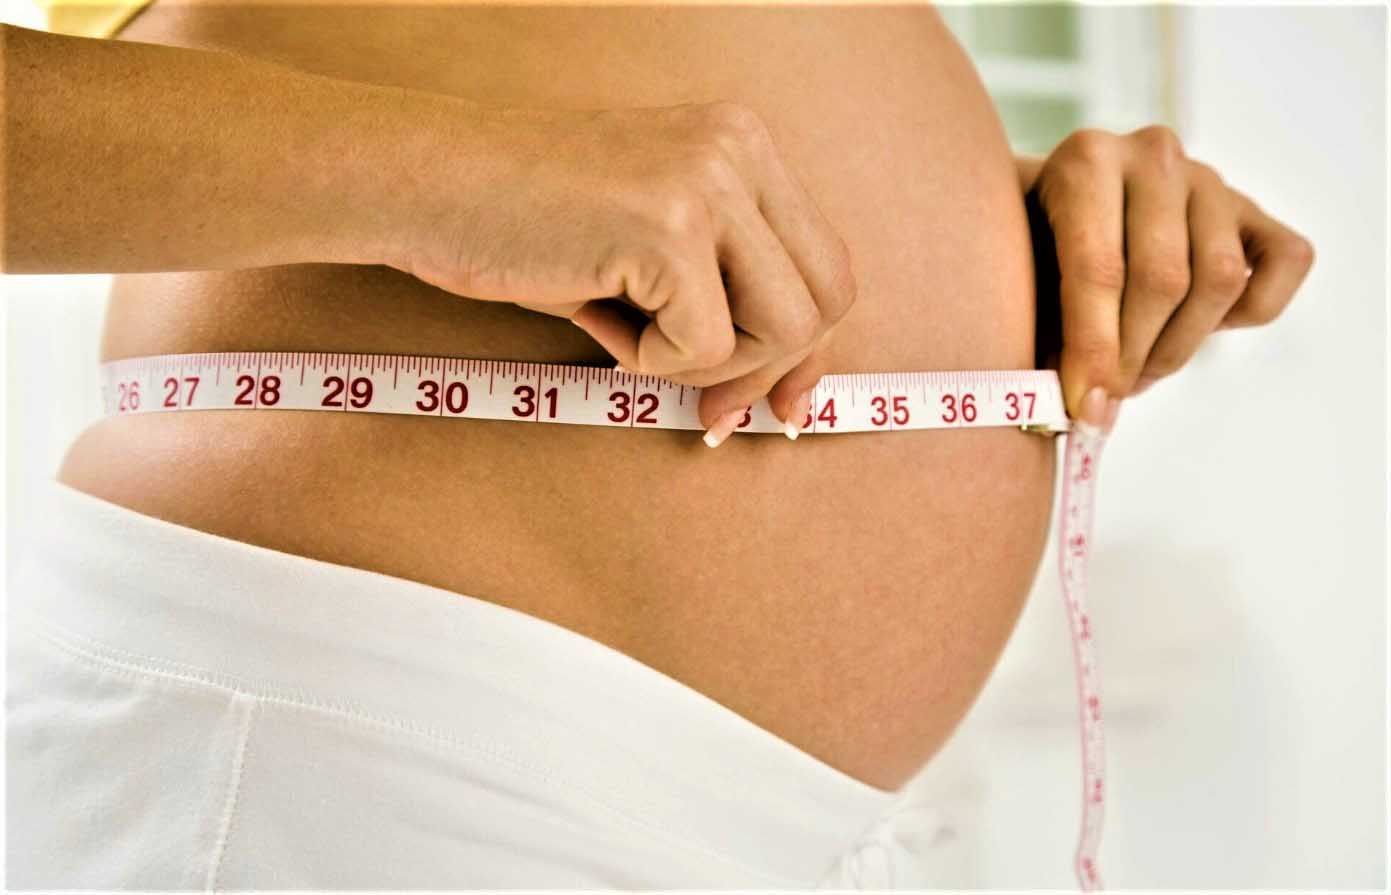 Ответы к тестам НМО: "Нормальная беременность (по утвержденным клиническим рекомендациям)"